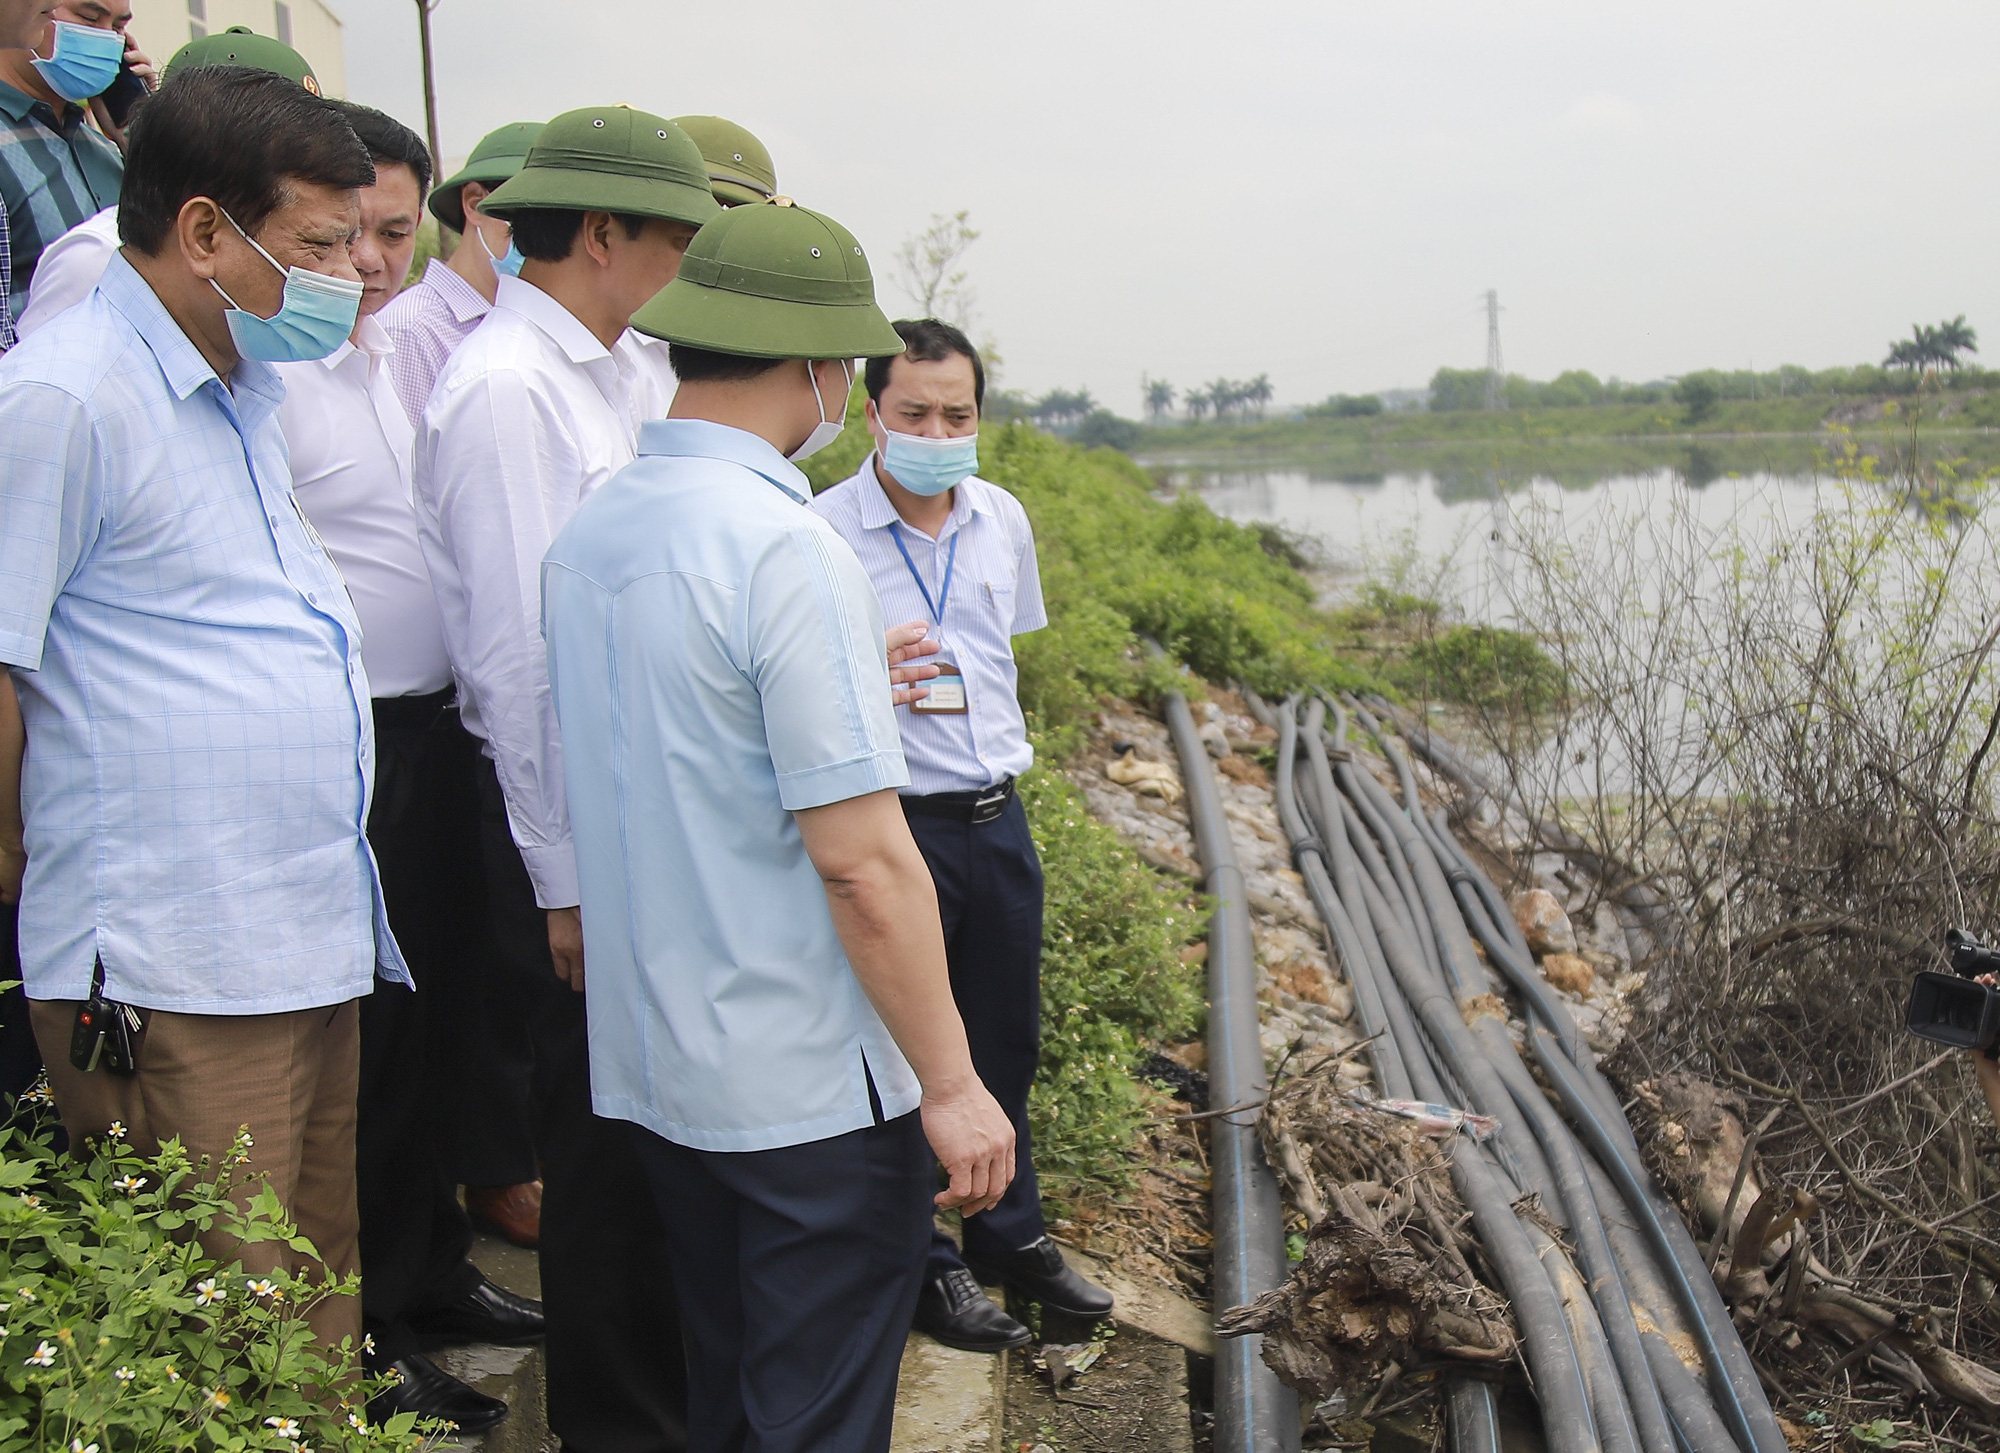 Bắc Ninh: Nhiều doanh nghiệp nhờn luật, gây ô nhiễm kinh hoàng tại các cụm công nghiệp giấy Phú Lâm, Phong Khê - Ảnh 1.